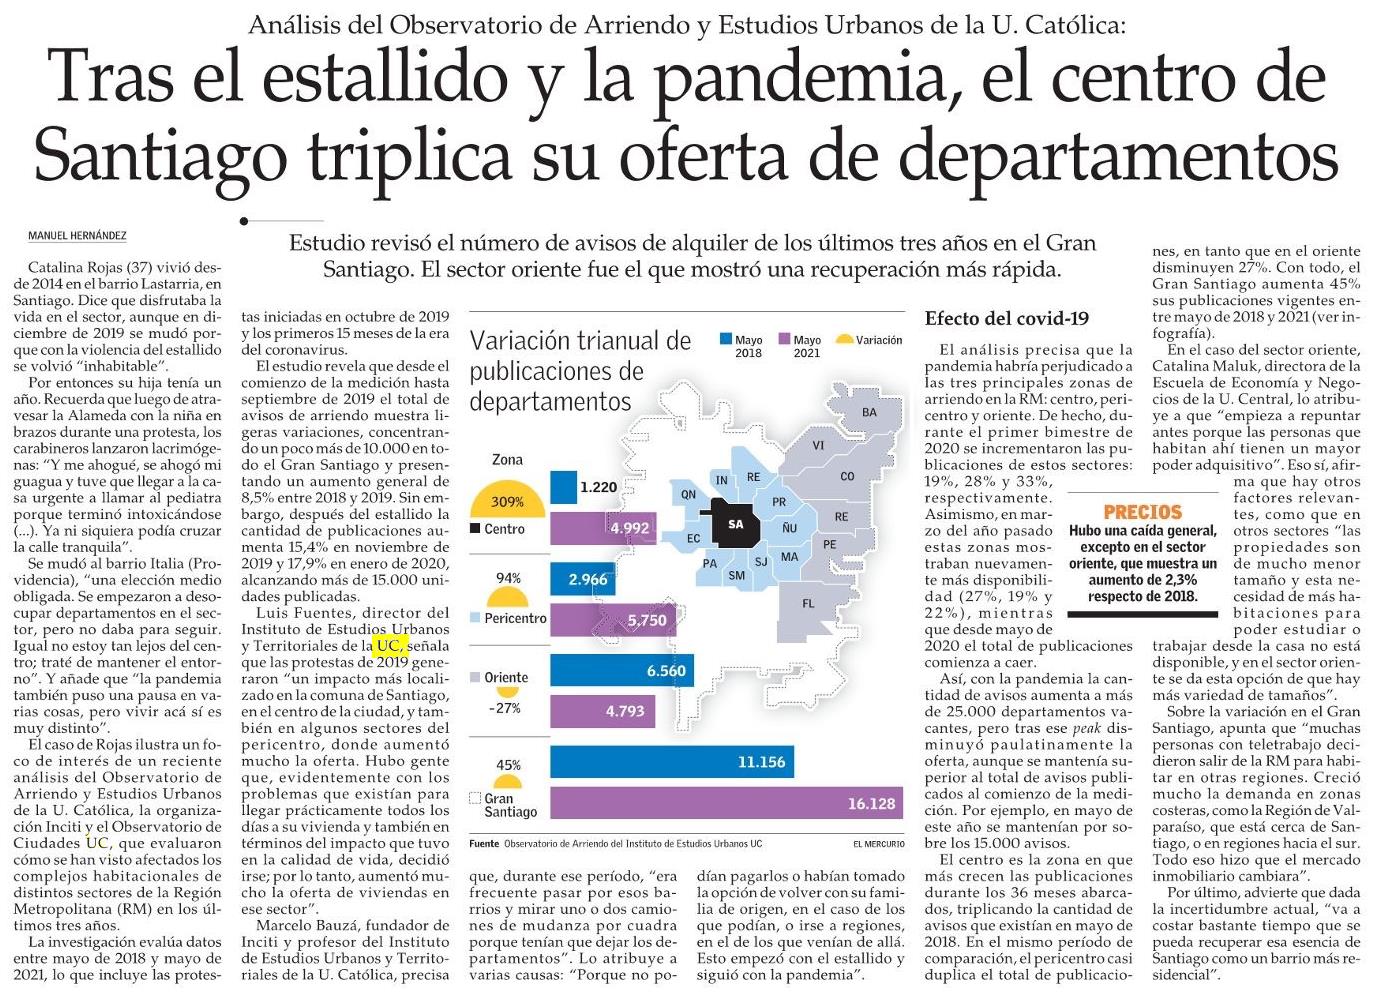 El Mercurio: Tras el estallido y la pandemia, el centro de Santiago triplica su oferta de departamentos